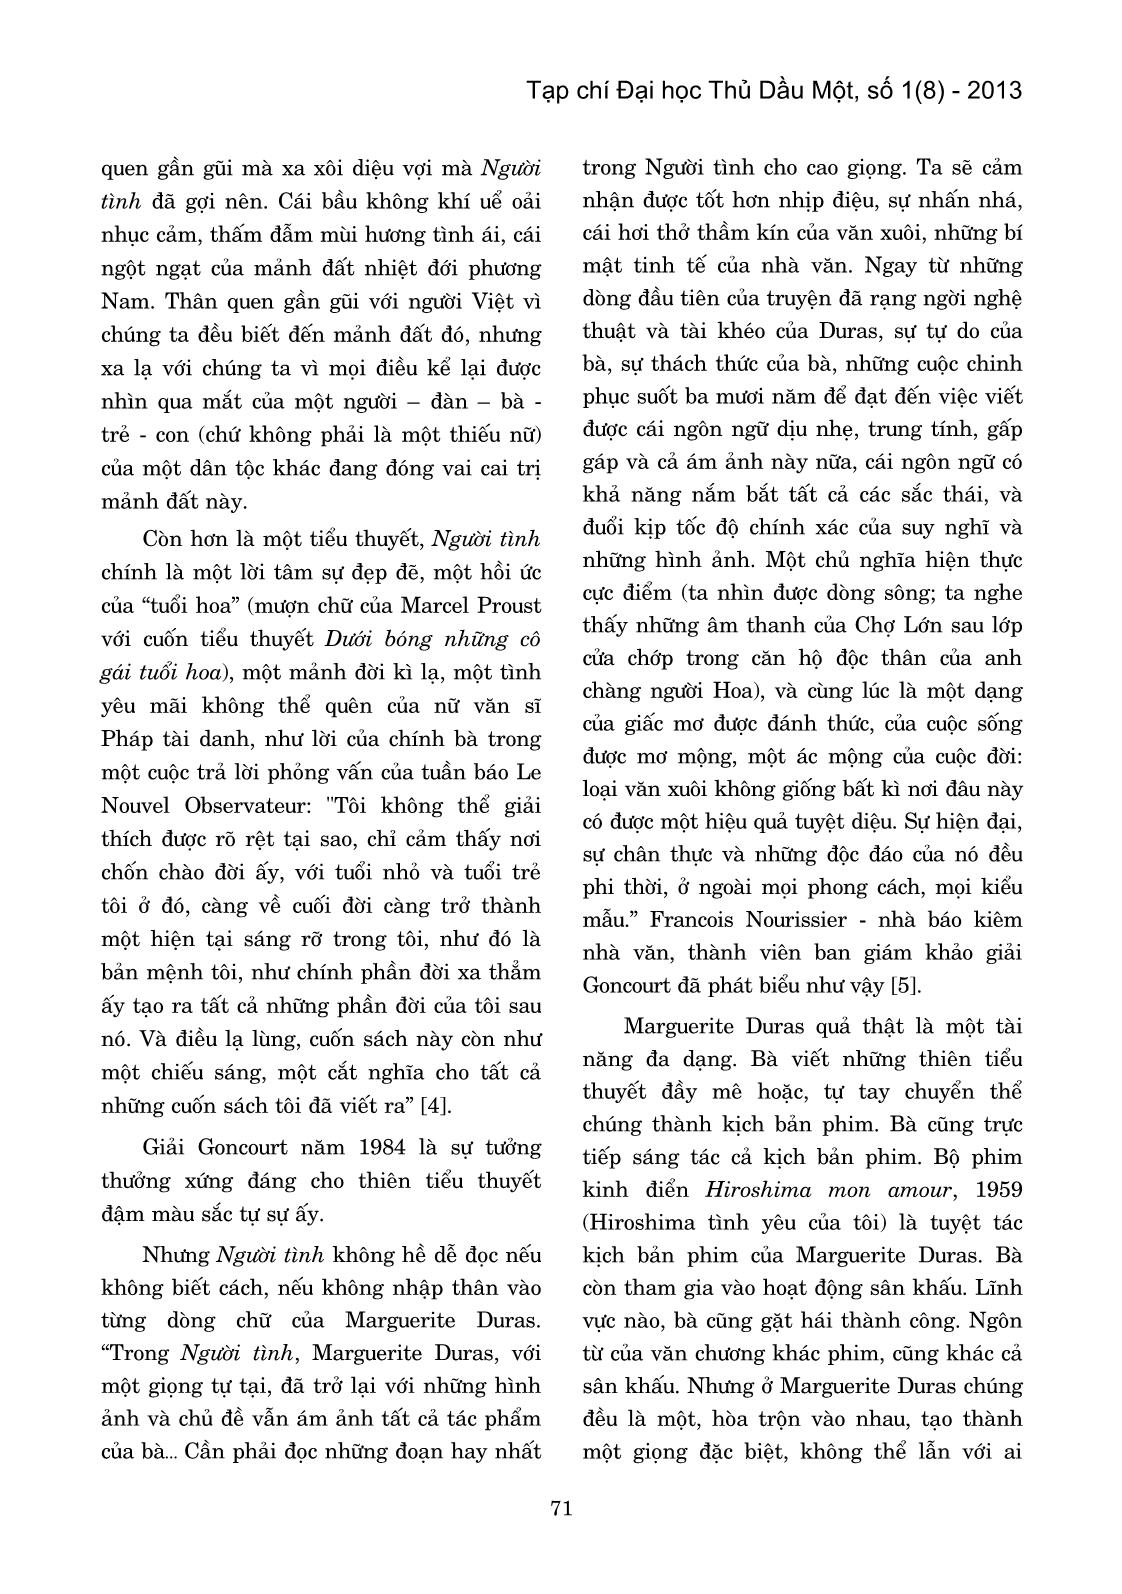 Arguerite Duras với tình yêu và ký ức về miền Nam Kì lục tỉnh trang 5